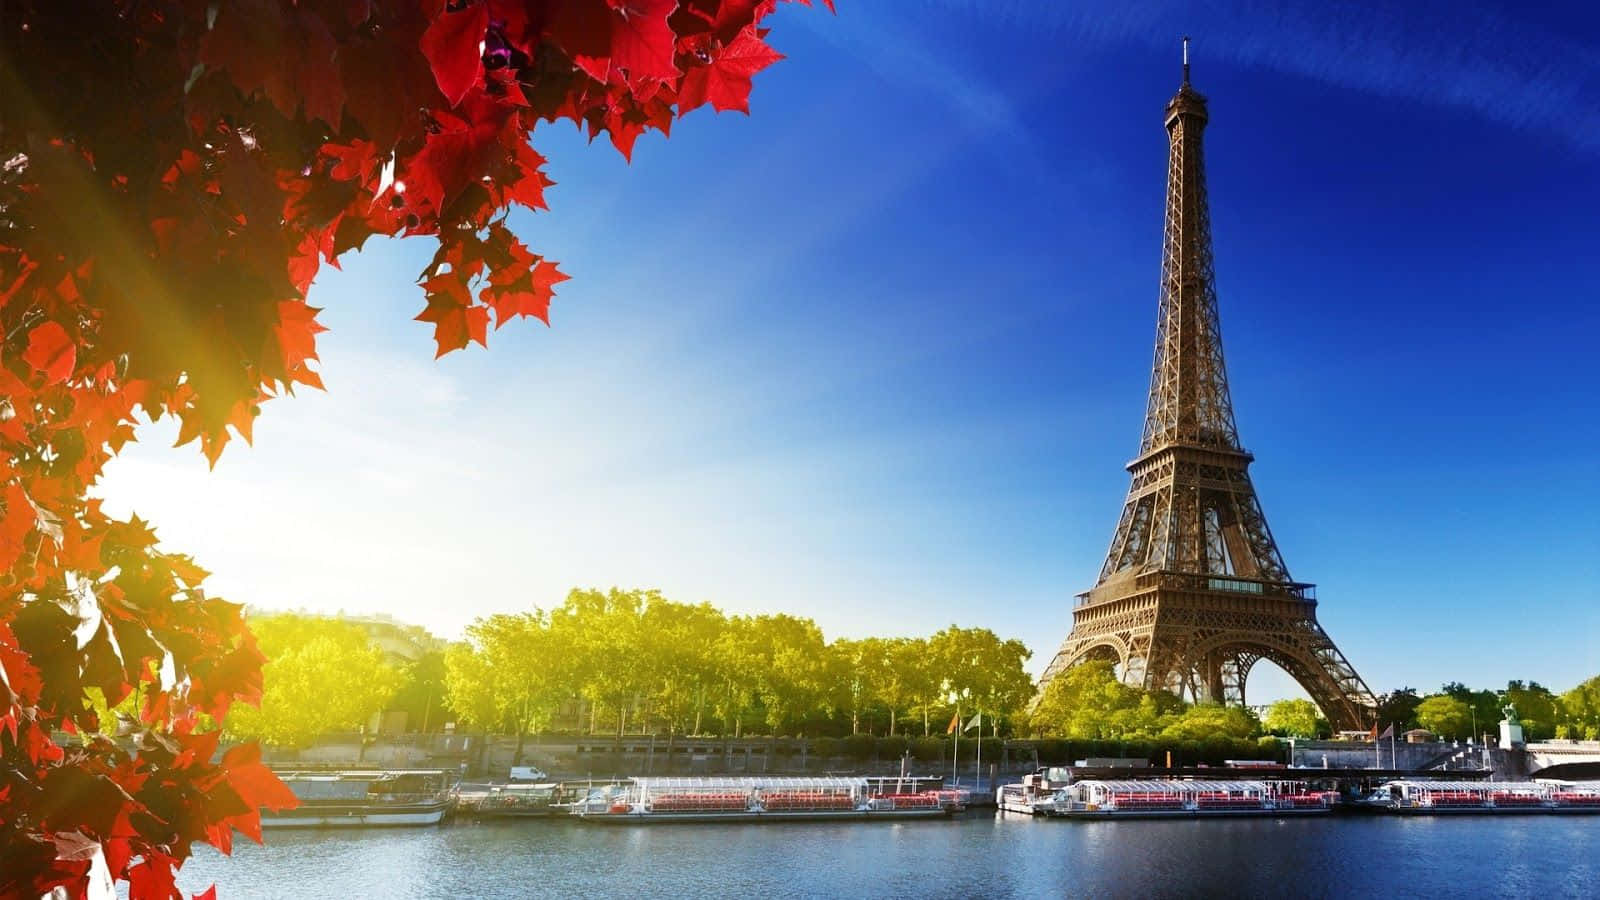 Lamigliore Immagine Per Lo Sfondo Del Desktop Del Viaggio Alla Torre Eiffel. Sfondo